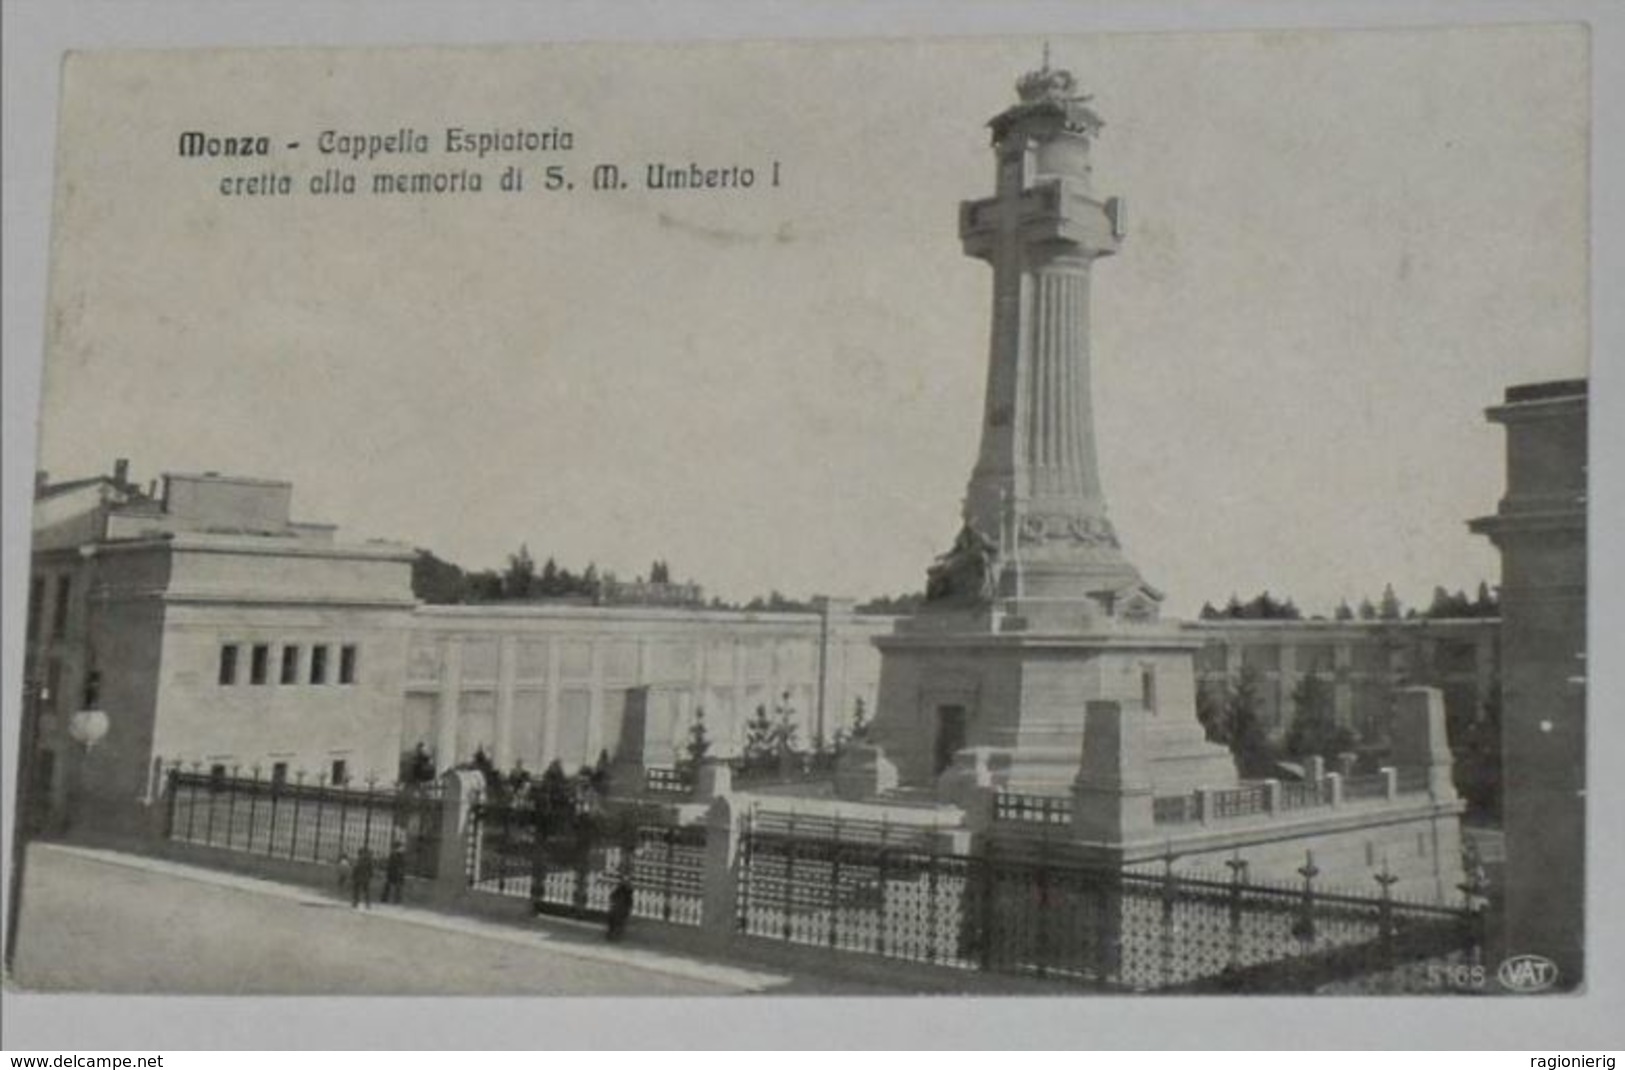 Monza - MONZA BRIANZA - Monza - Cappella Espiatoria eretta alla memoria di  S.M.Umberto I°